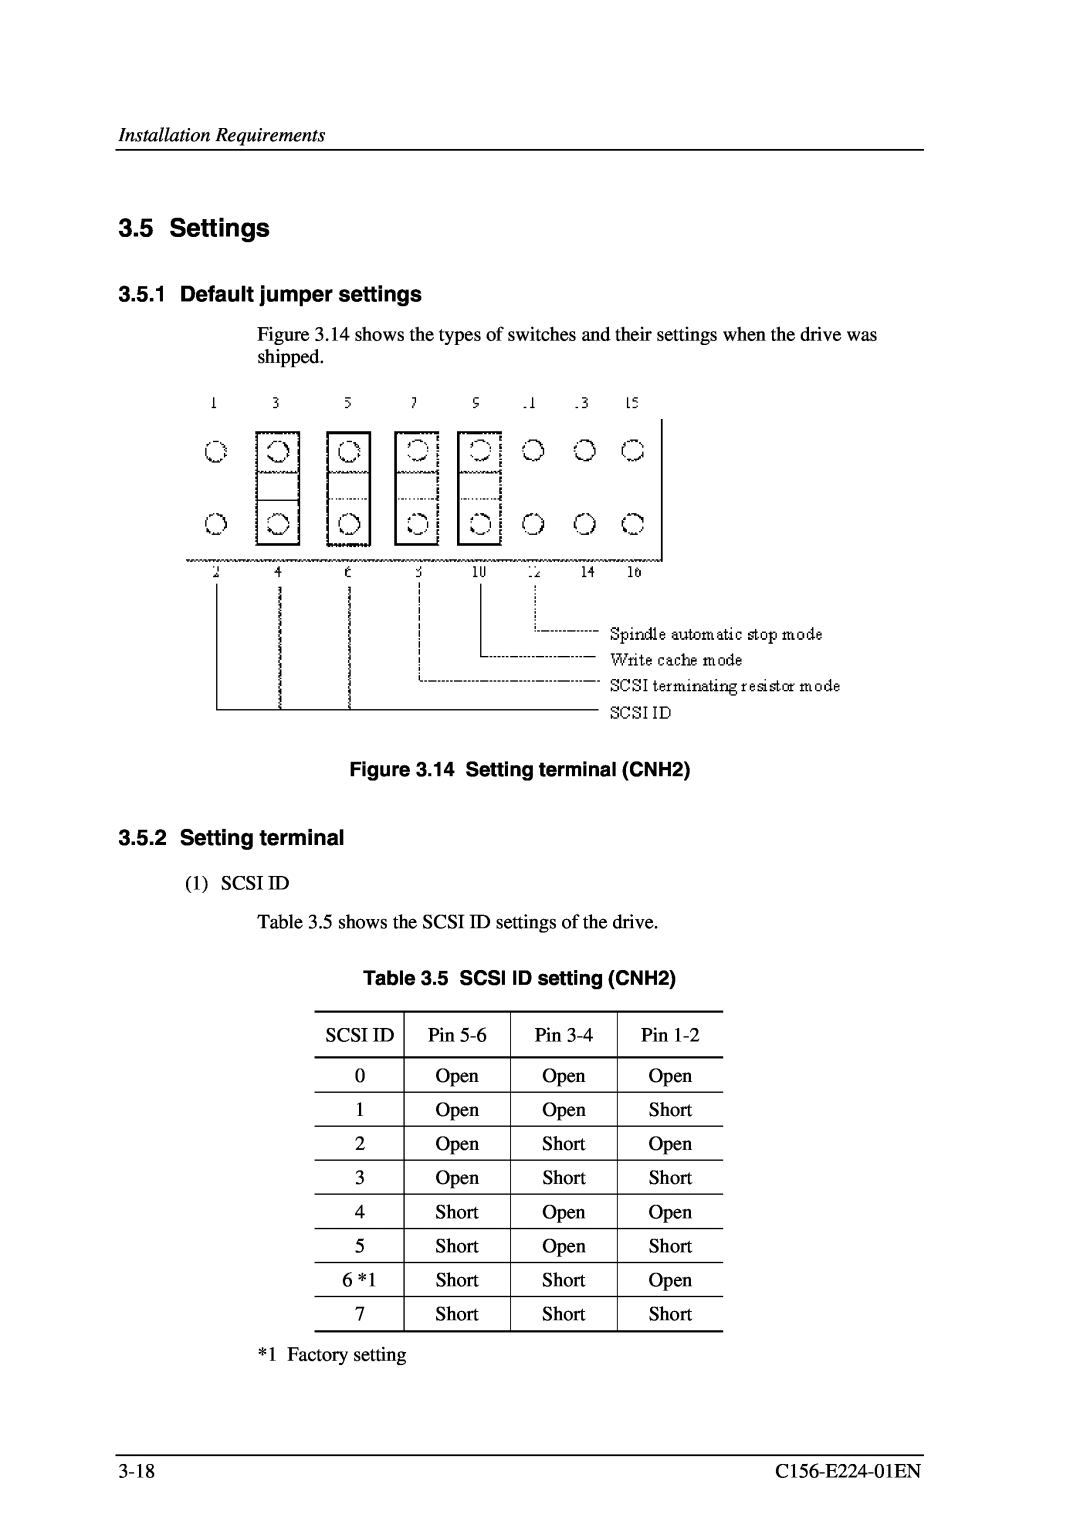 Fujitsu MCJ3230SS manual Settings, Default jumper settings, 14 Setting terminal CNH2, 5 SCSI ID setting CNH2 